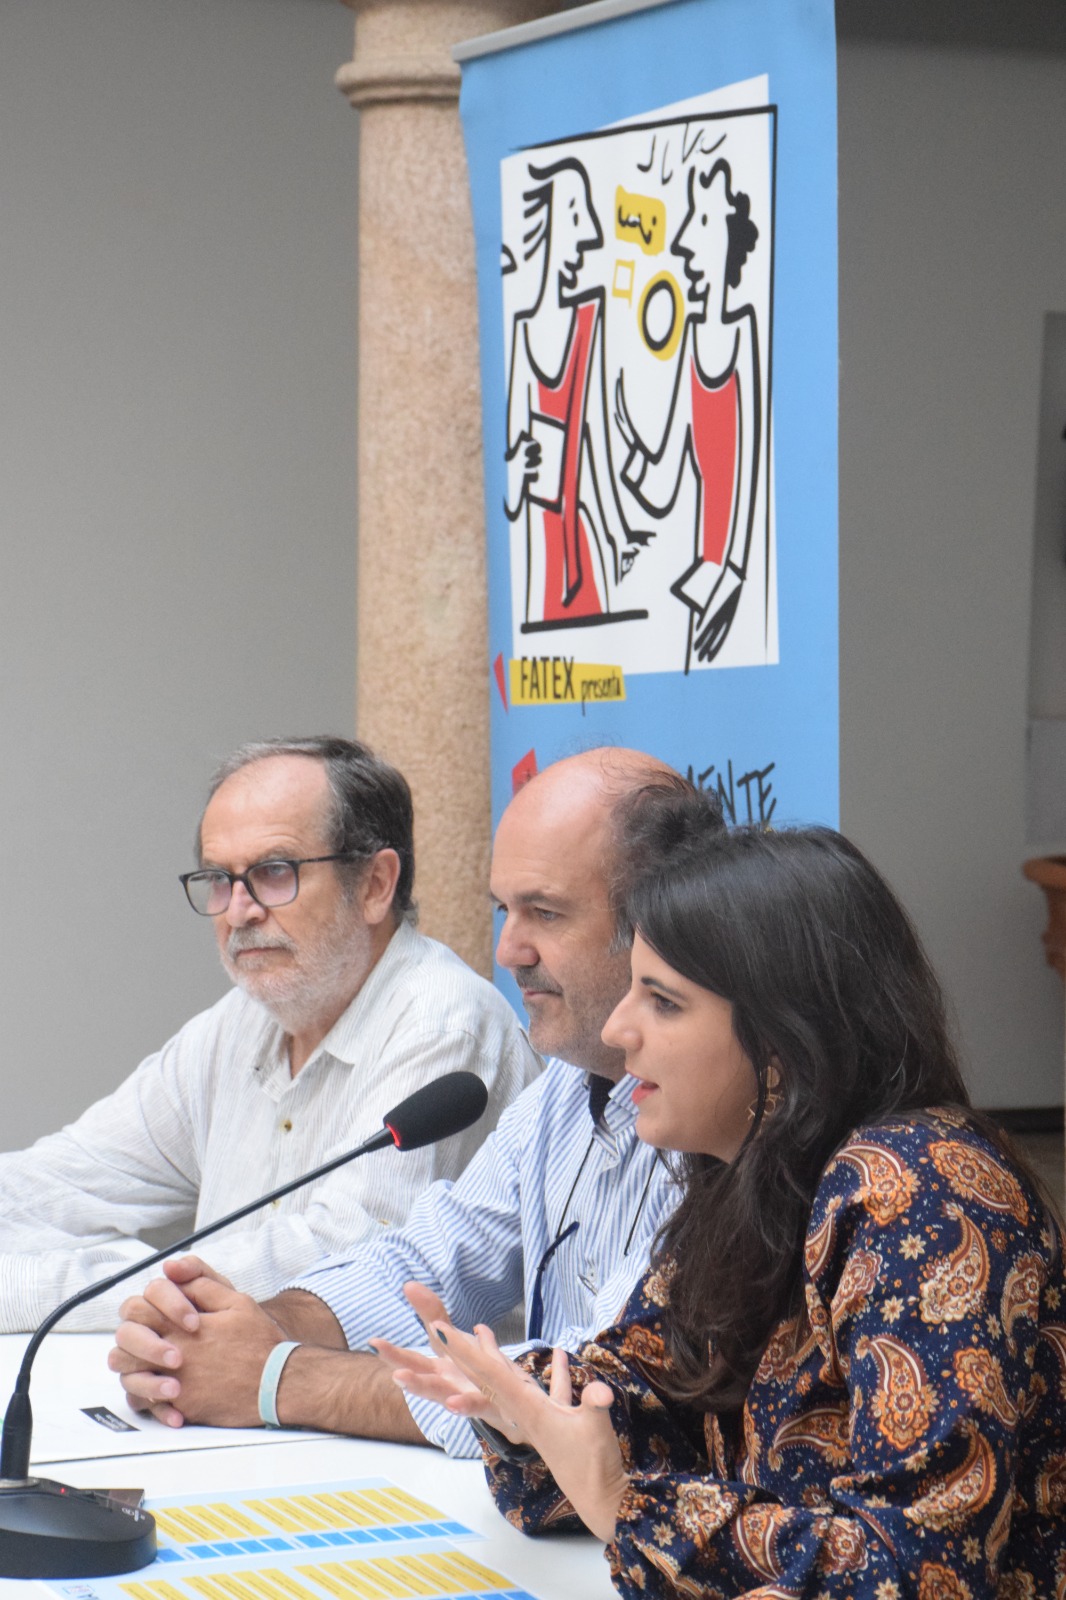 Image 2 of article Fuentes de León acoge el Festival de Teatro Amateur con tres obras de teatro y dos visitas guiadas dramatizadas